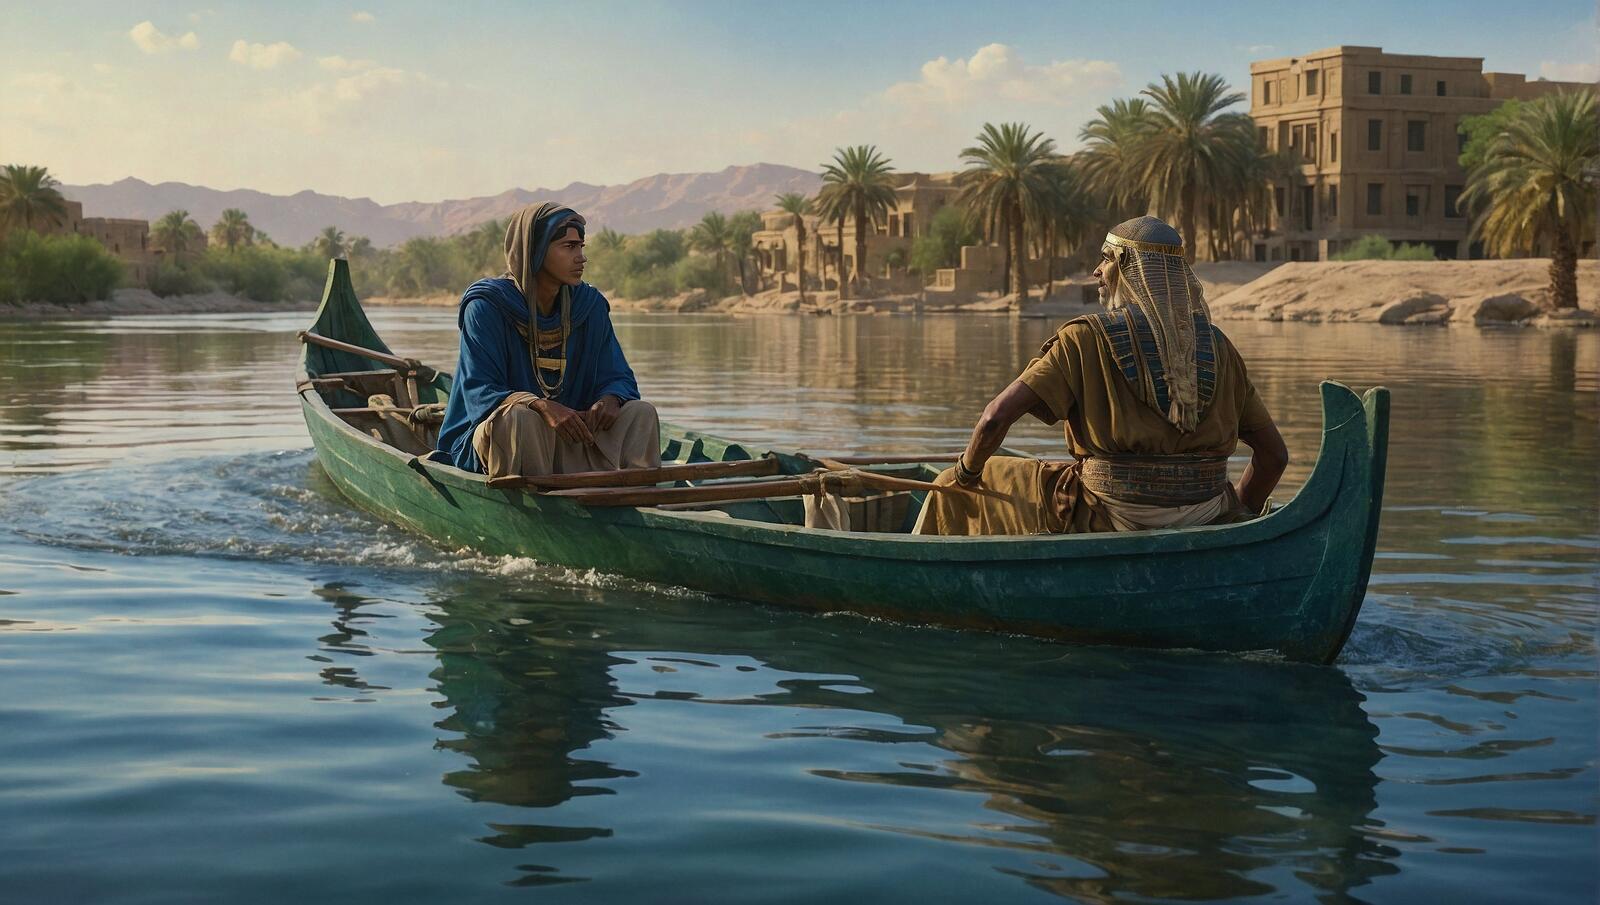 Free photo Two men in fancy headdresses in a canoe on the water